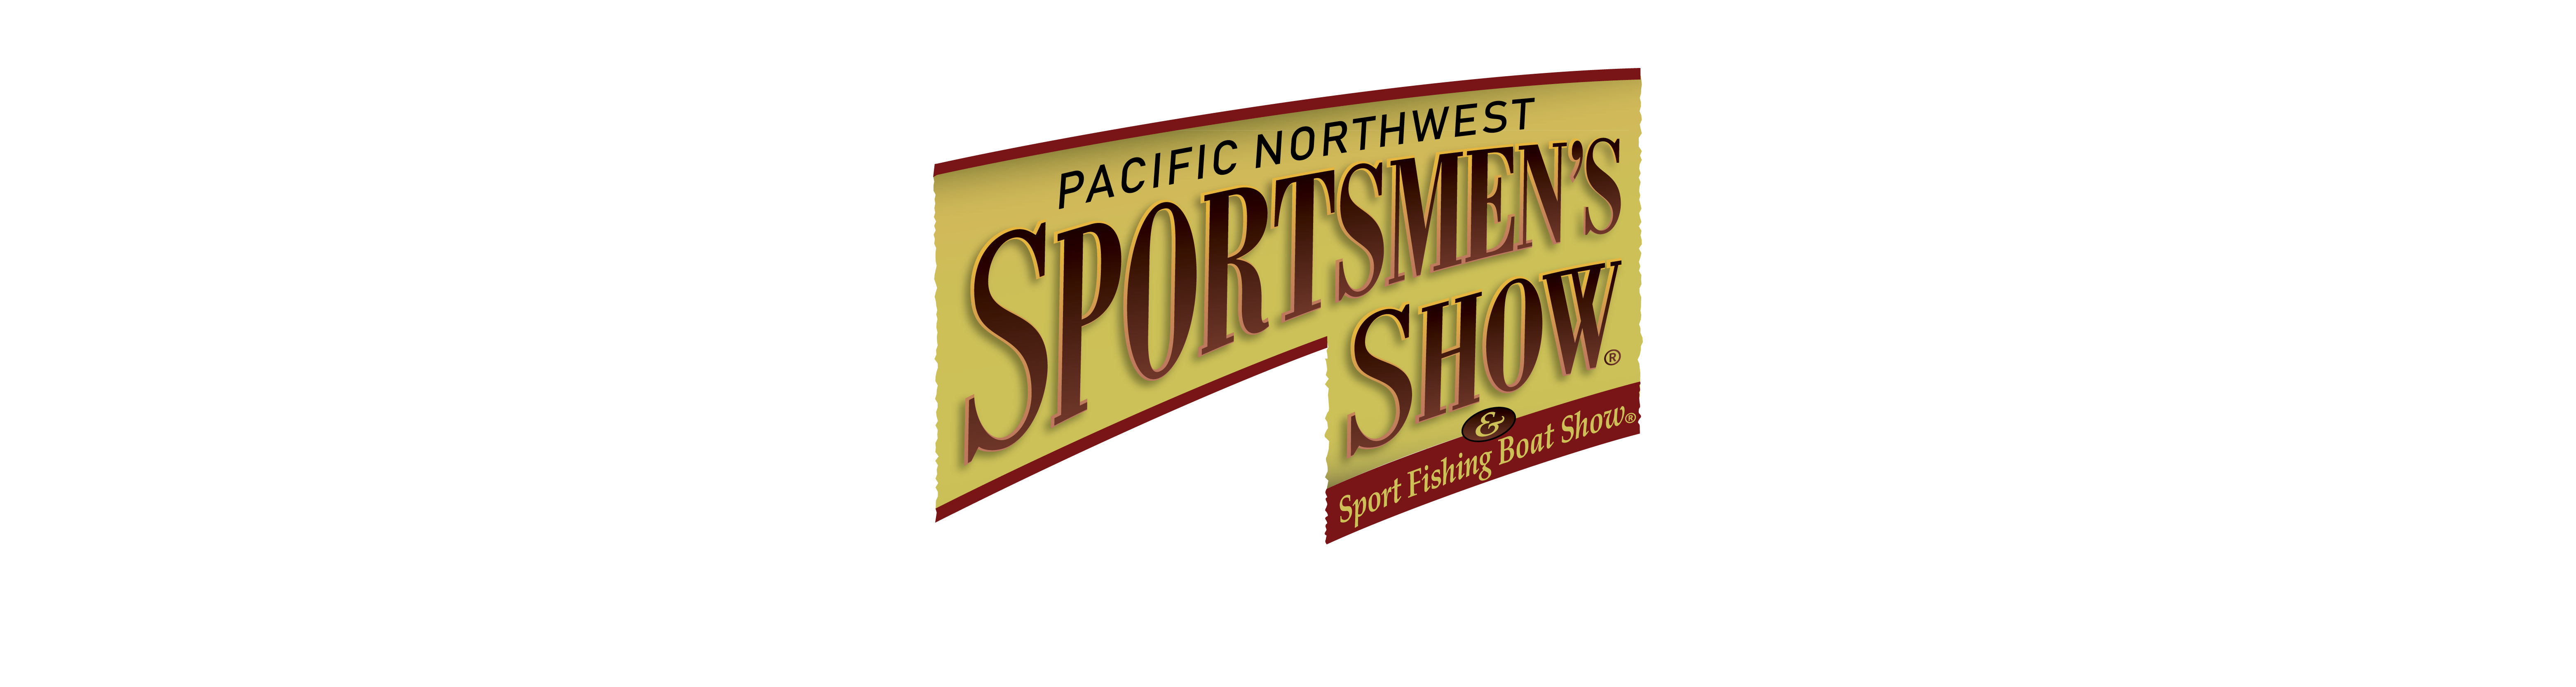 Pacific Northwest Sportsmen's Show, Portland